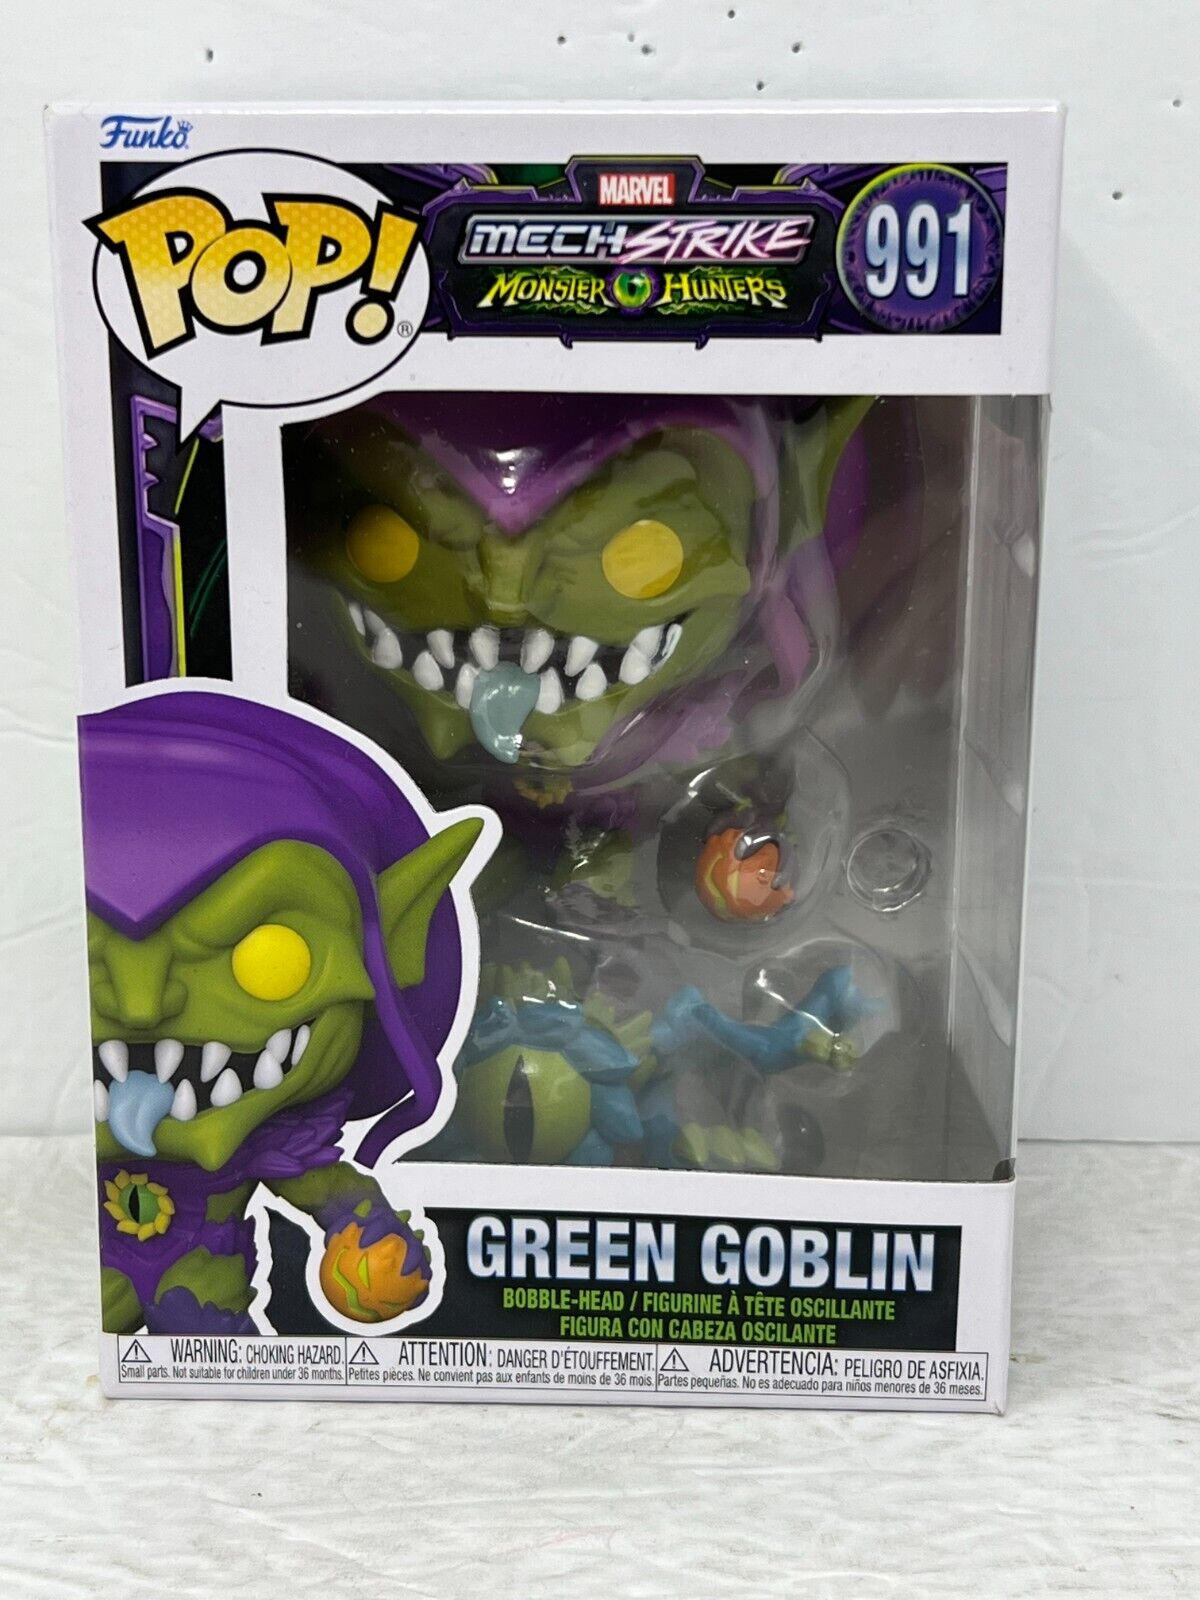 Funko Pop! Marvel Mech Strike Monster Hunters #991 Green Goblin Bobble-Head